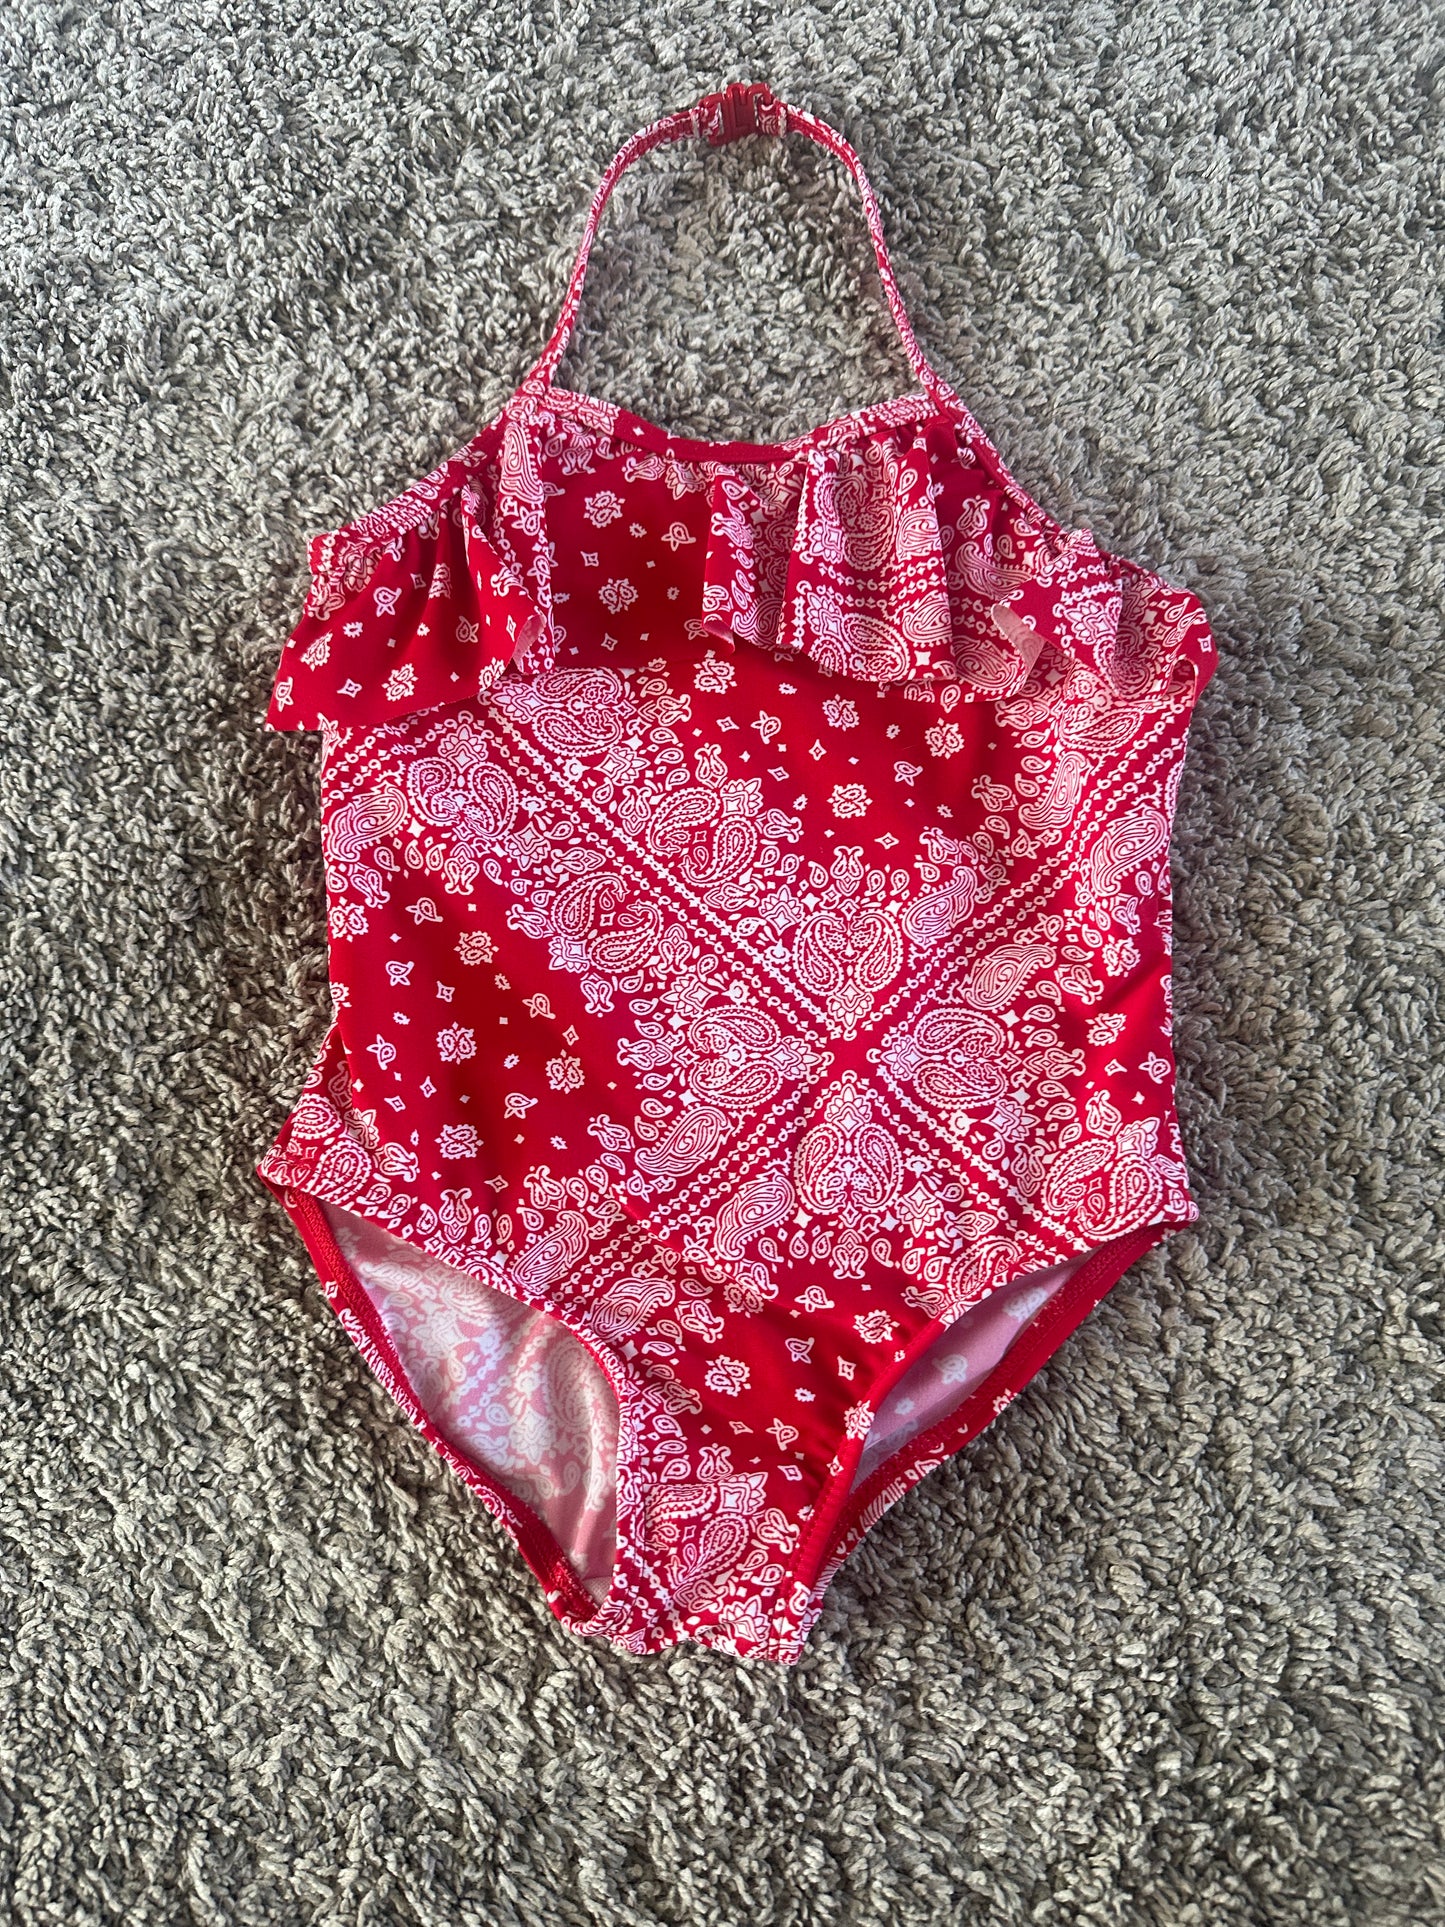 Red, One-Piece OshKosh Bathing Suit, Size 5T